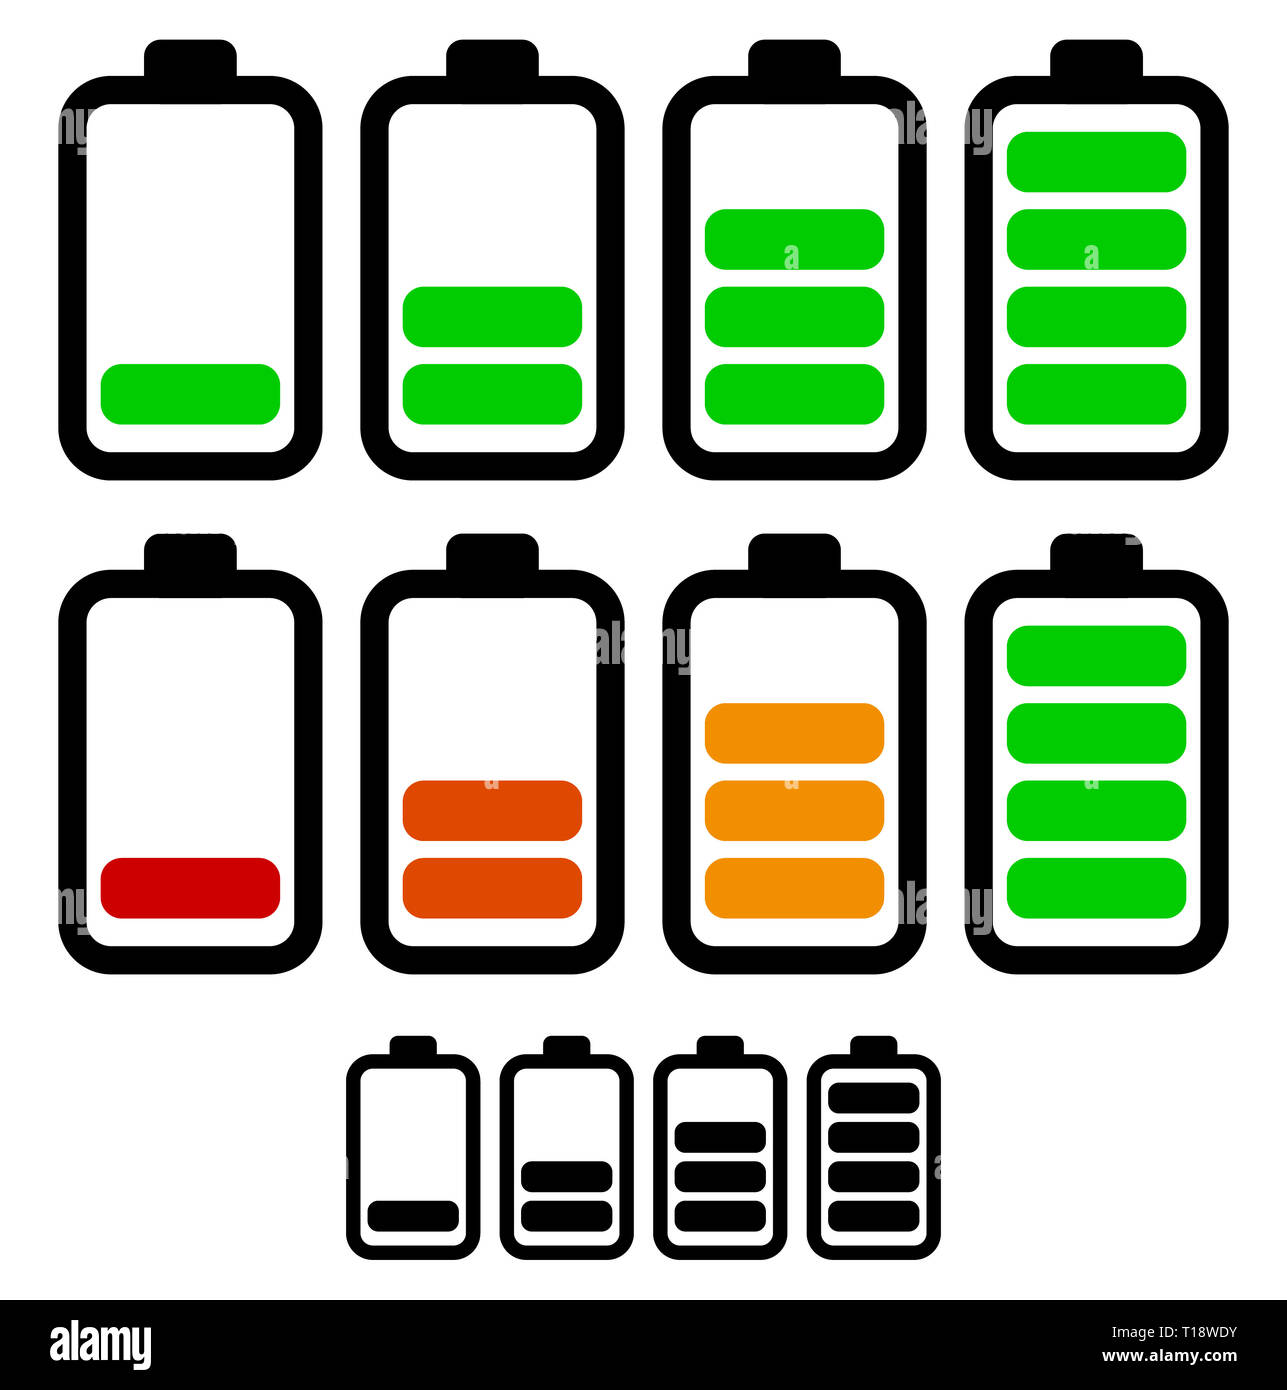 Illustration der Batterie voll-und Leermelder. Lebensdauer der Batterie,  Akku, Batterie zur Neige, Batterie aufladen Vektor Stockfotografie - Alamy